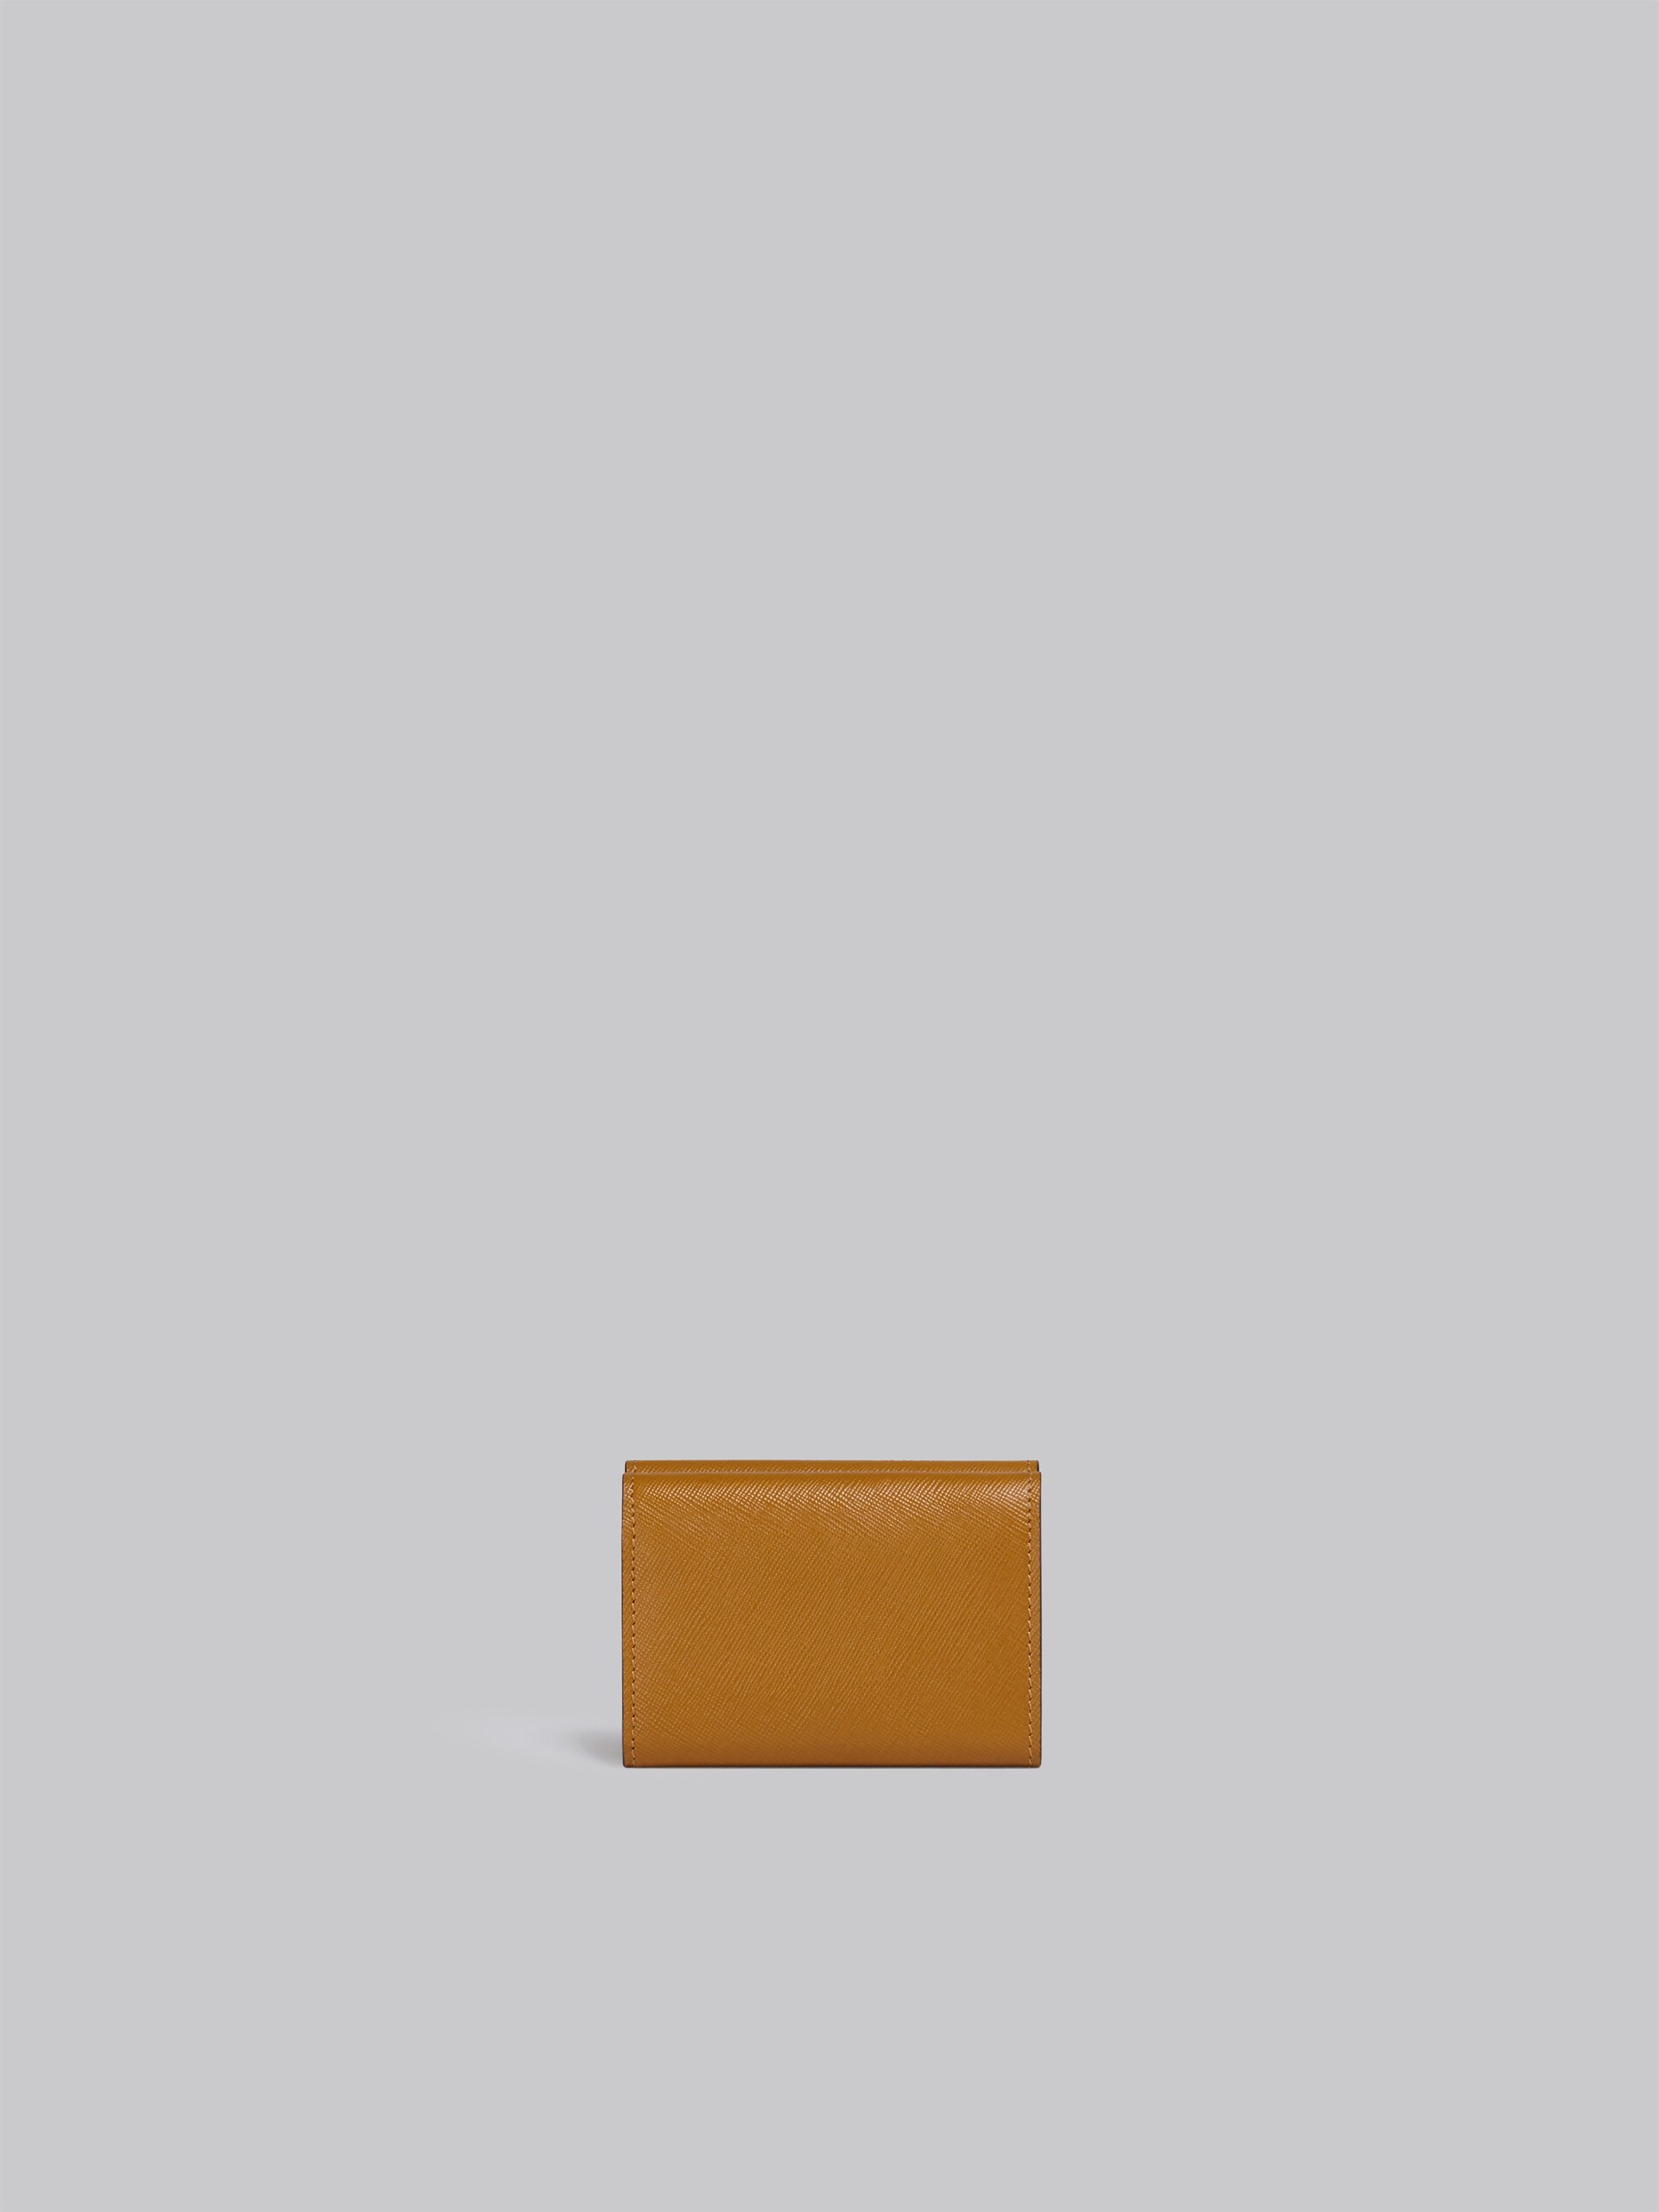 ブラウン ライラック・ブラック サフィアーノレザー製 三つ折りウォレット - 財布 - Image 3